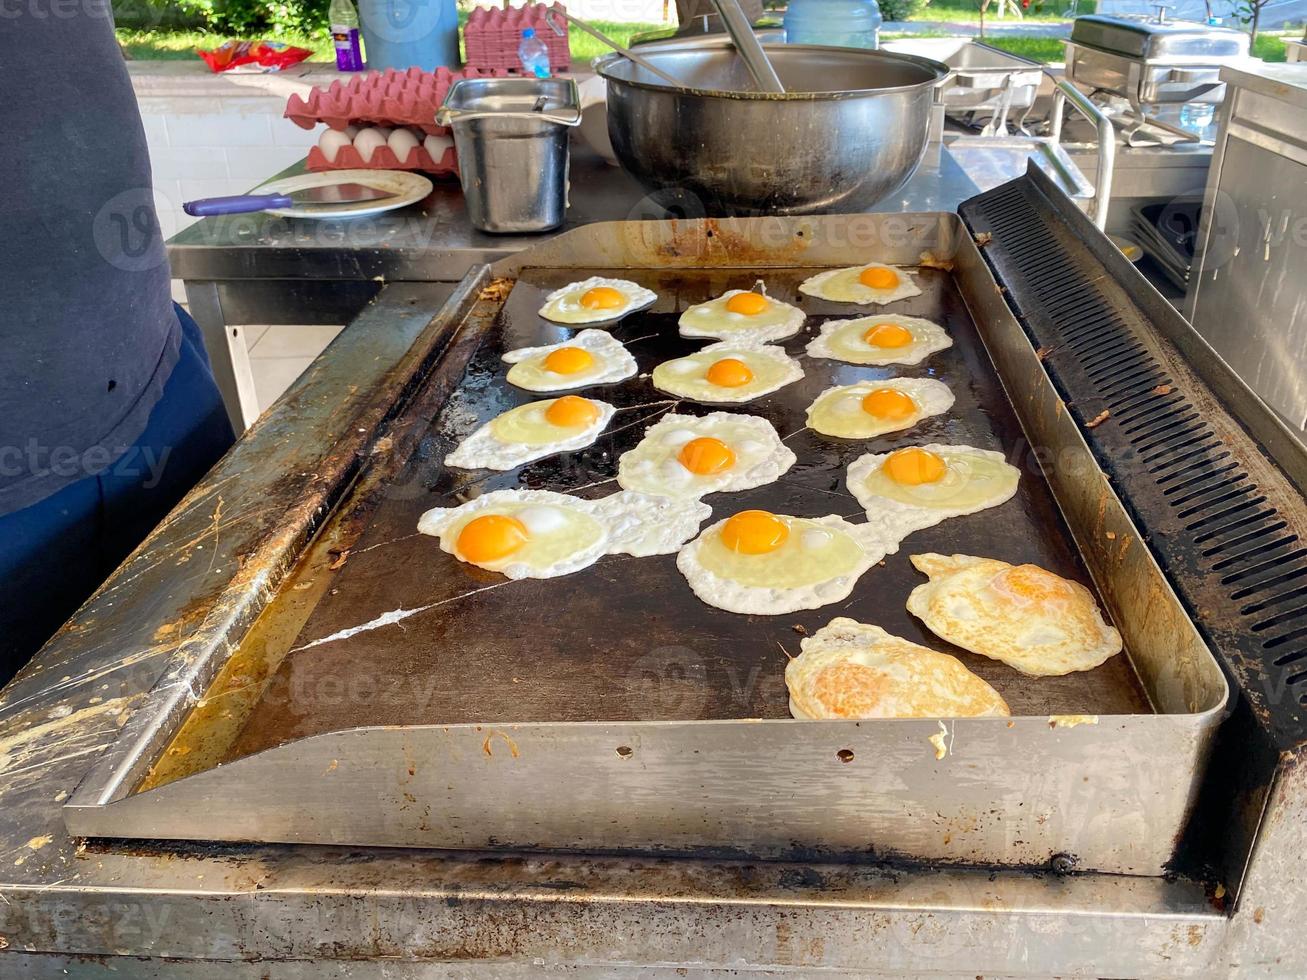 chef, koken kookt een veel van eieren Aan de fornuis, door elkaar gegooid eieren in een restaurant in een Open keuken in een all-inclusive hotel in een toerist warm tropisch land paradijs toevlucht Aan vakantie foto